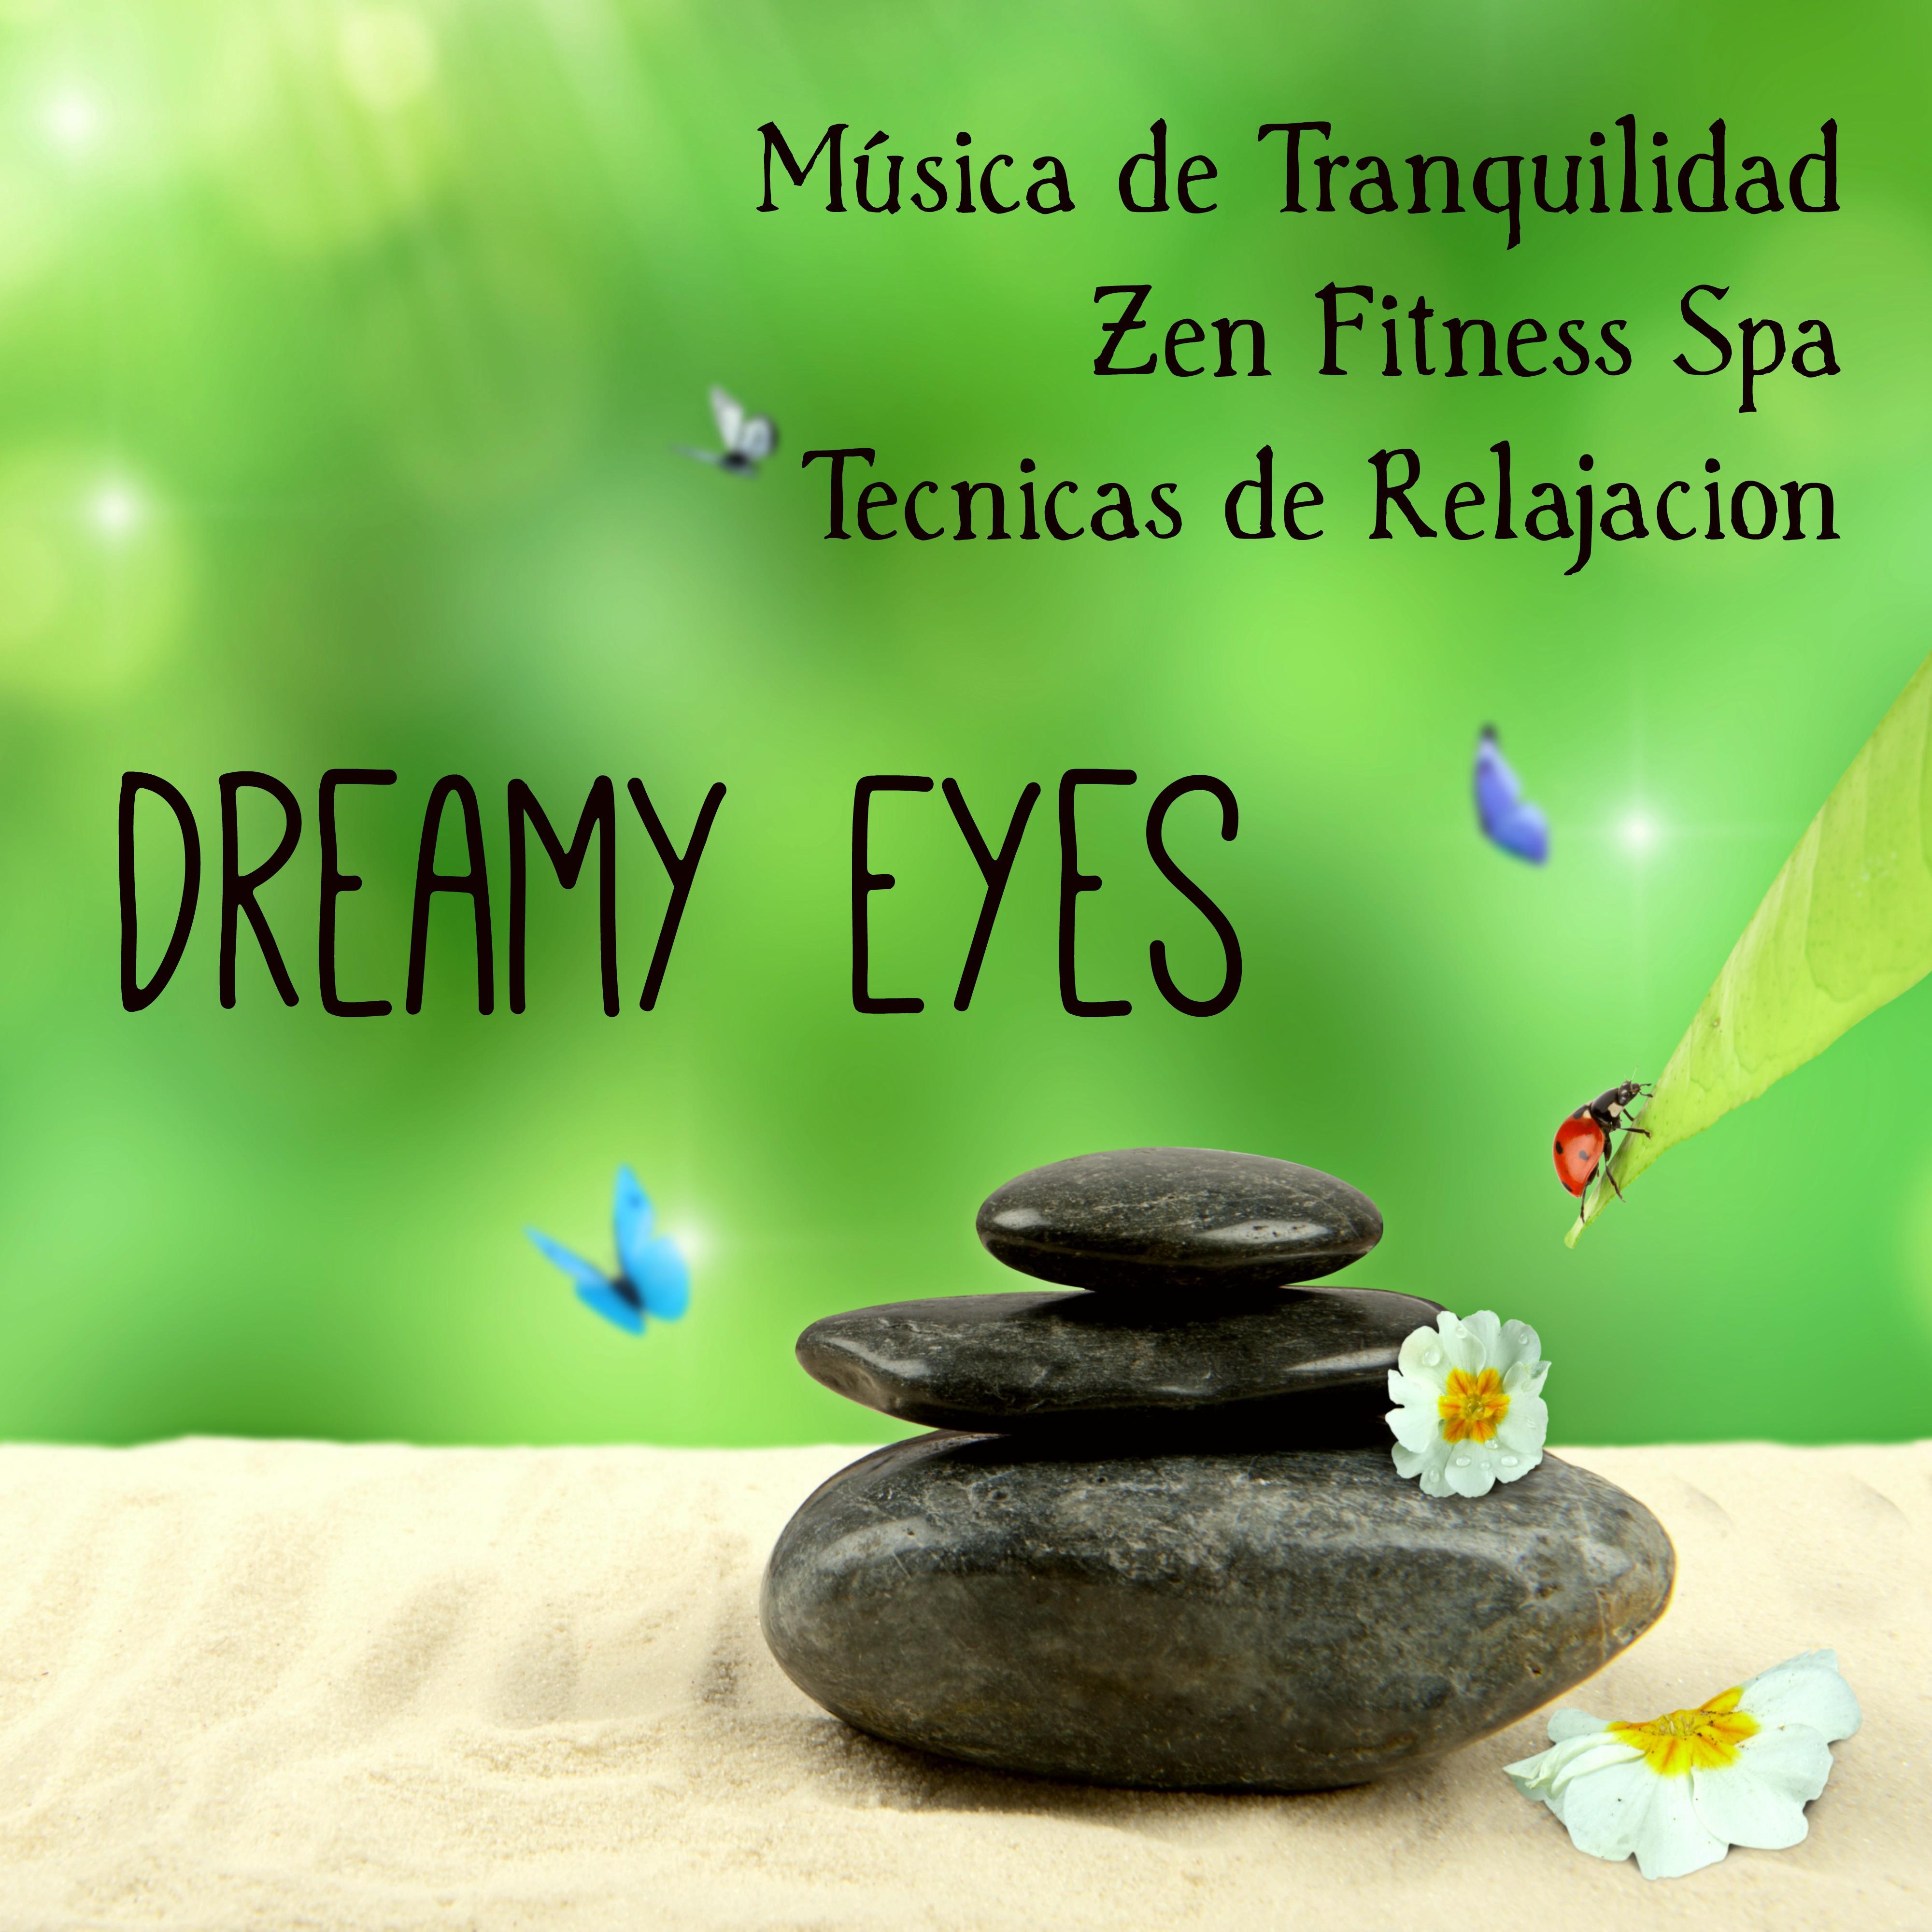 Dreamy Eyes  Mu sica de Tranquilidad Zen Fitness Spa Tecnicas de Relajacion con Sonidos Lounge Chillout Jazz Instrumentales